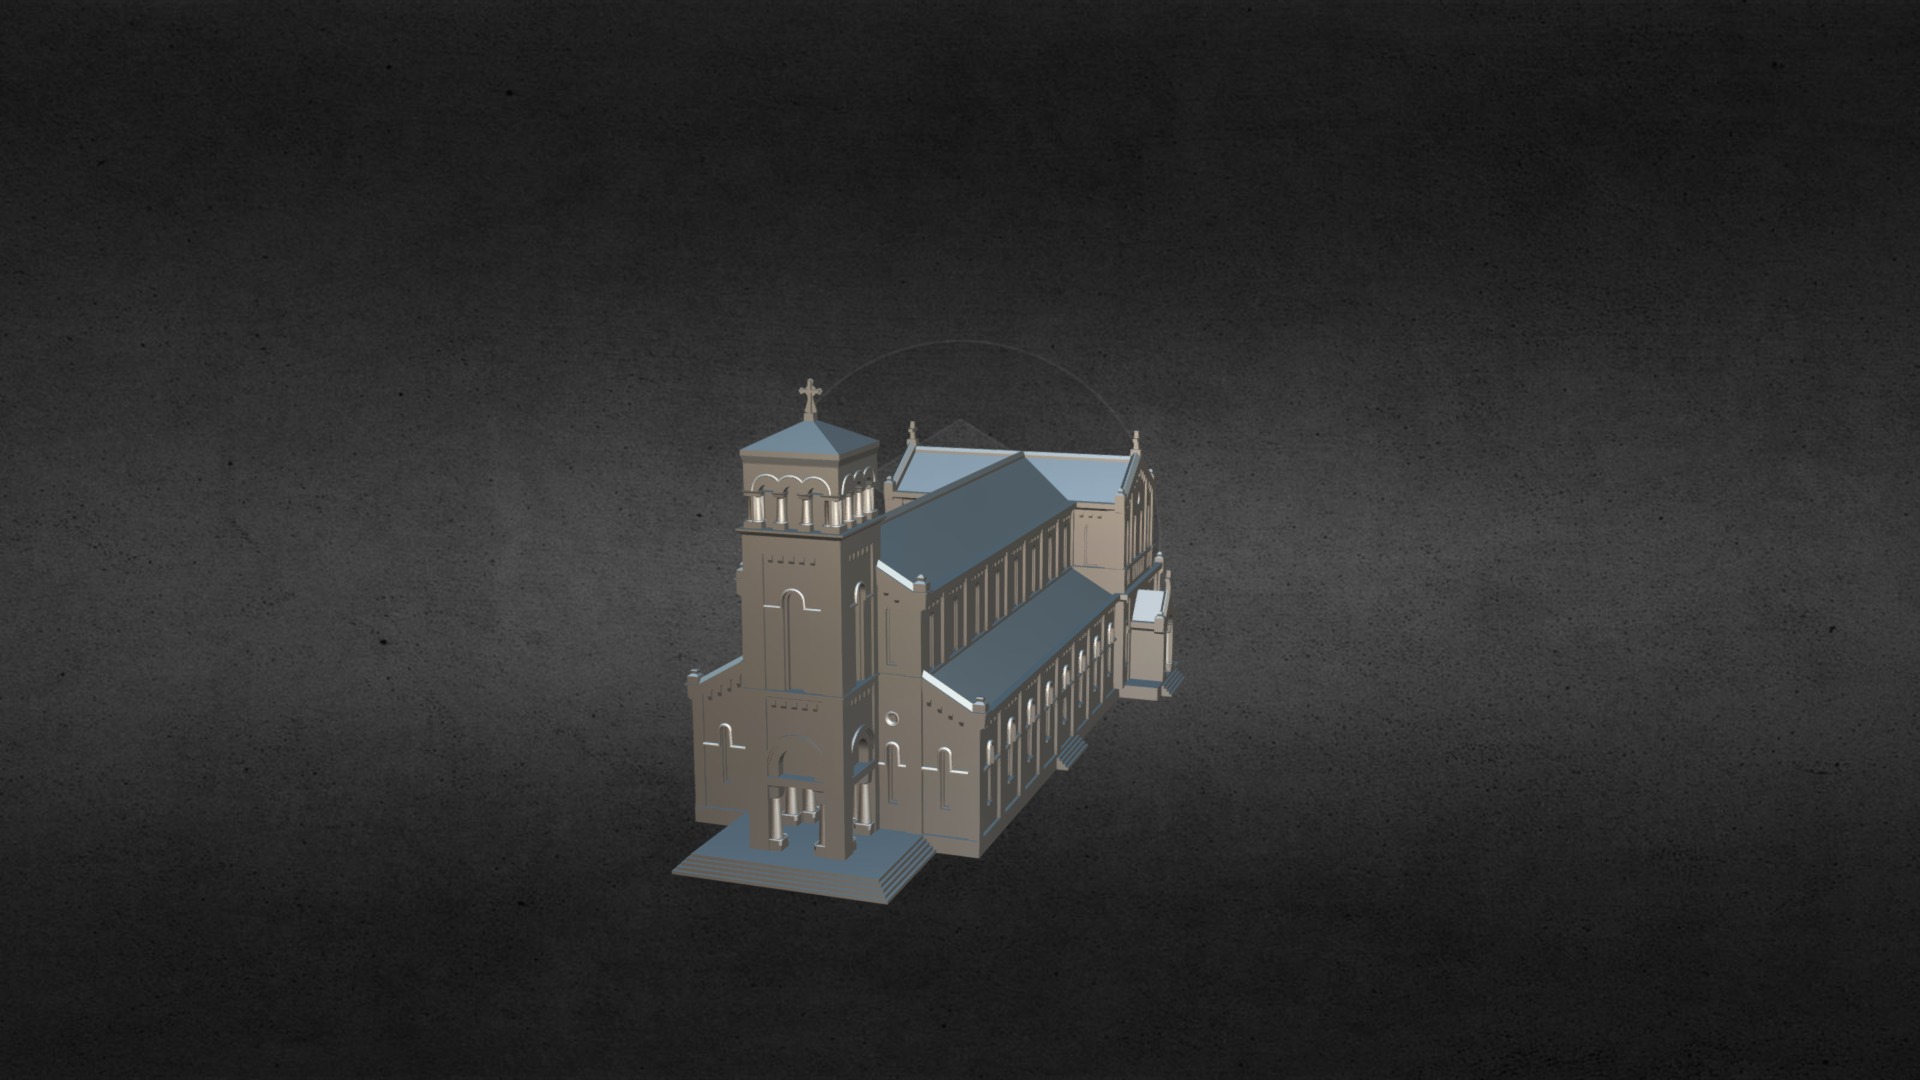 3D model Kiến trúc Nhà thờ LA VANG QUẢNG TRỊ - This is a 3D model of the Kiến trúc Nhà thờ LA VANG QUẢNG TRỊ. The 3D model is about a small house on a black surface.